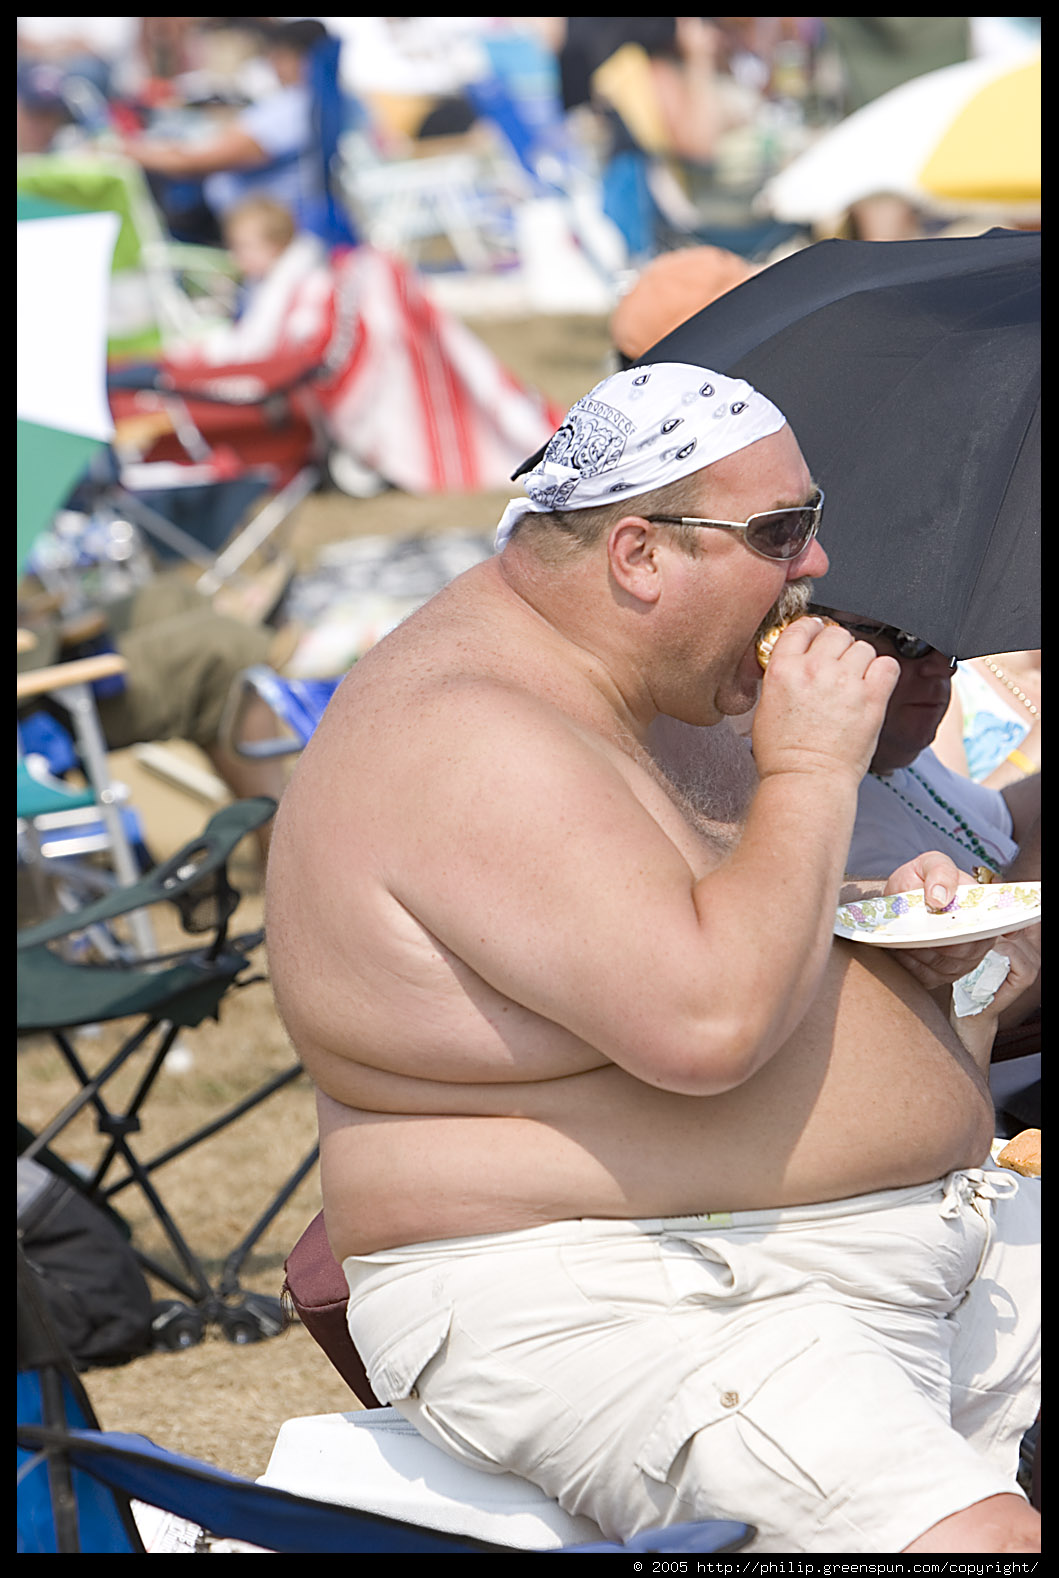 [Image: fat-shirtless-guy-eating-cheeseburger-2.4.jpg]